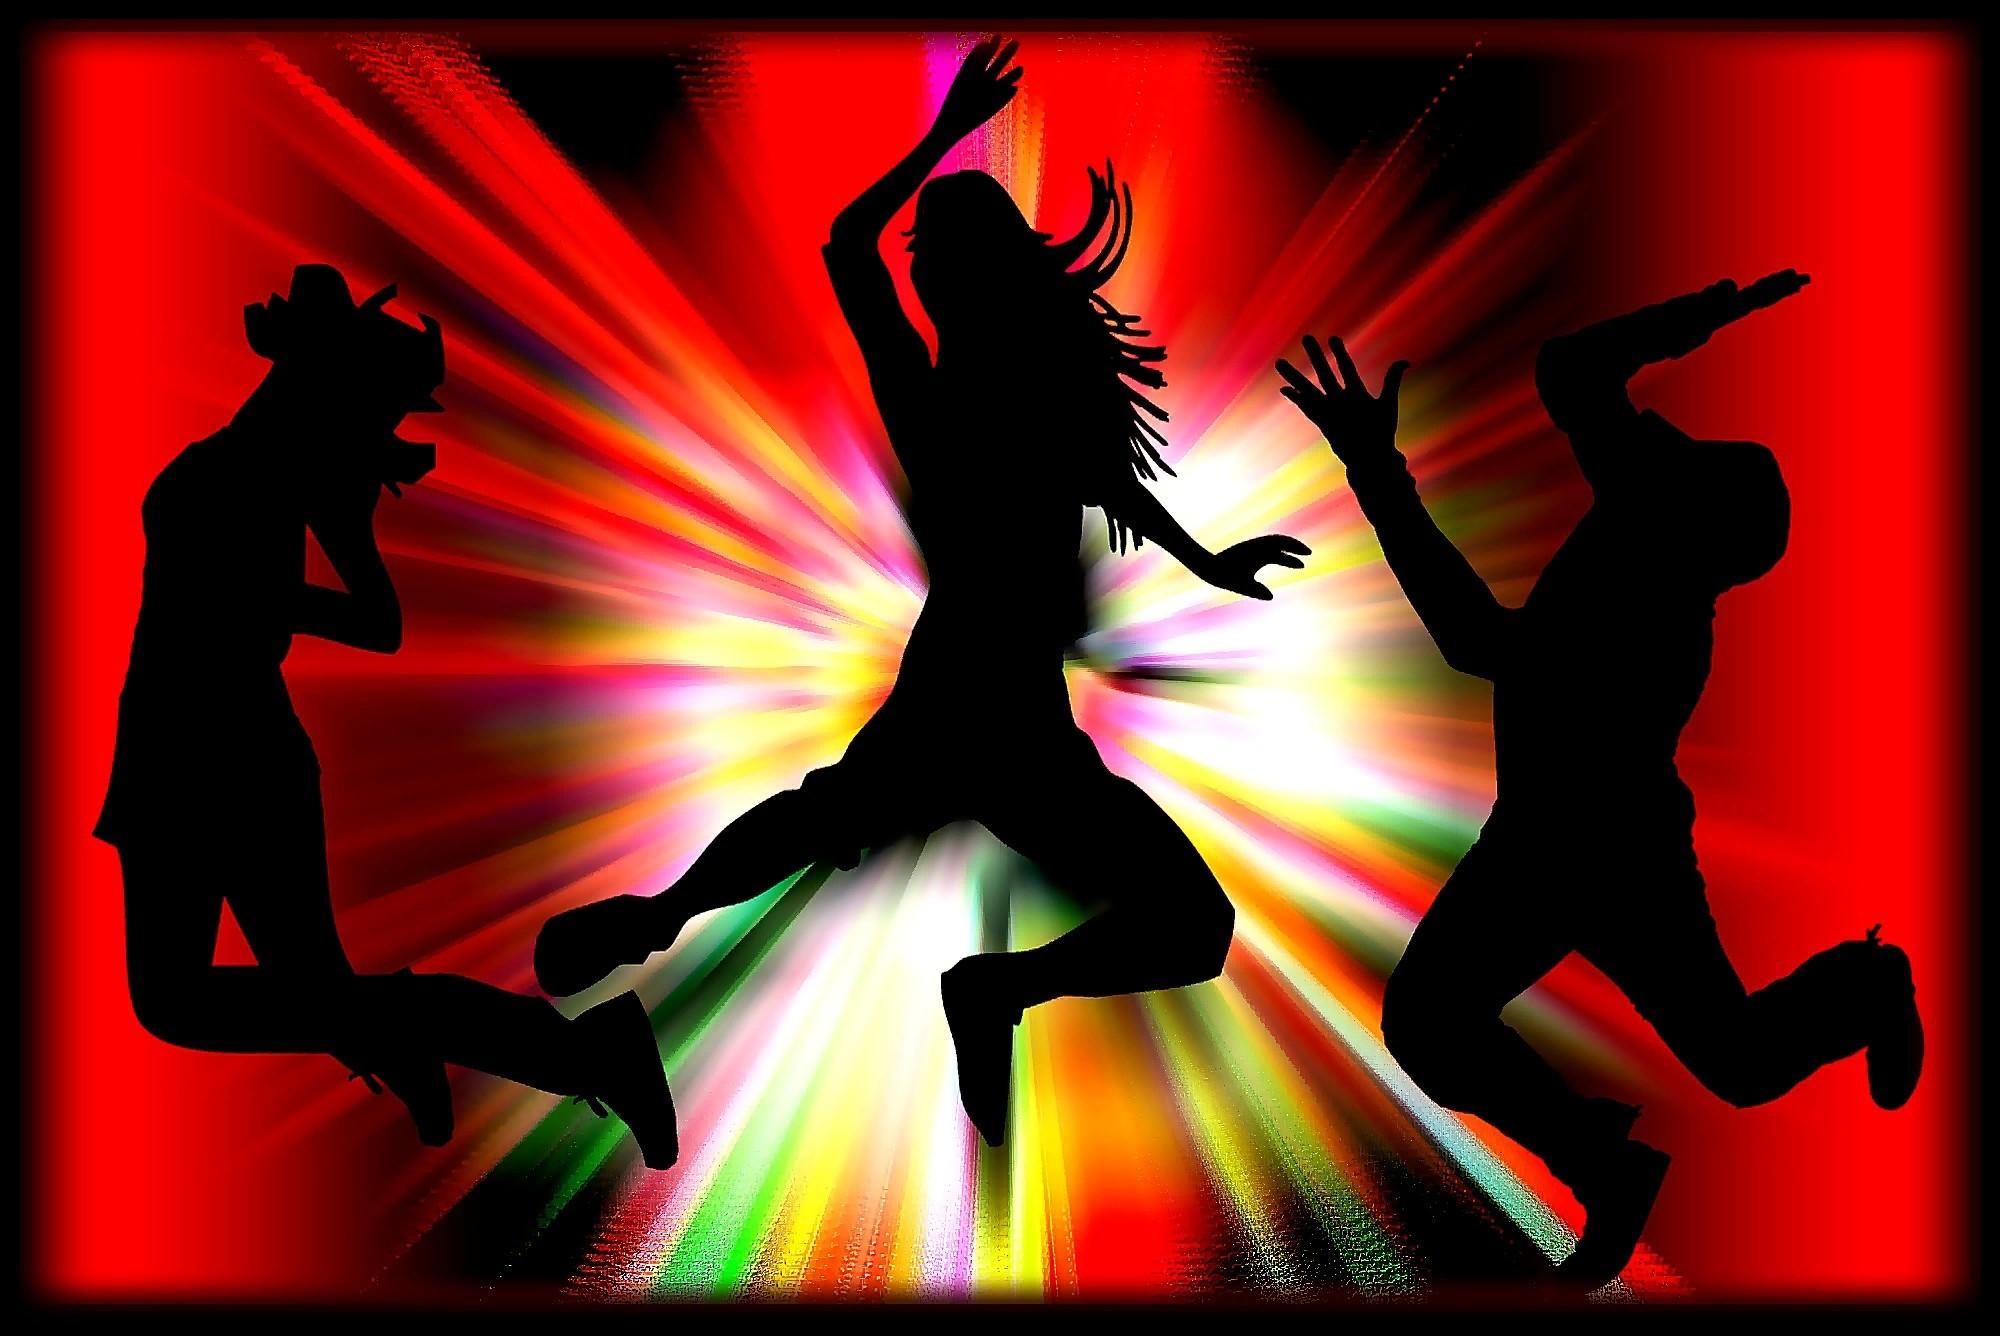 Слушать музыку танцевальную новинки молодежные. Современные танцы. Танцующие люди. Танцы картинки. Силуэты танцующих людей.